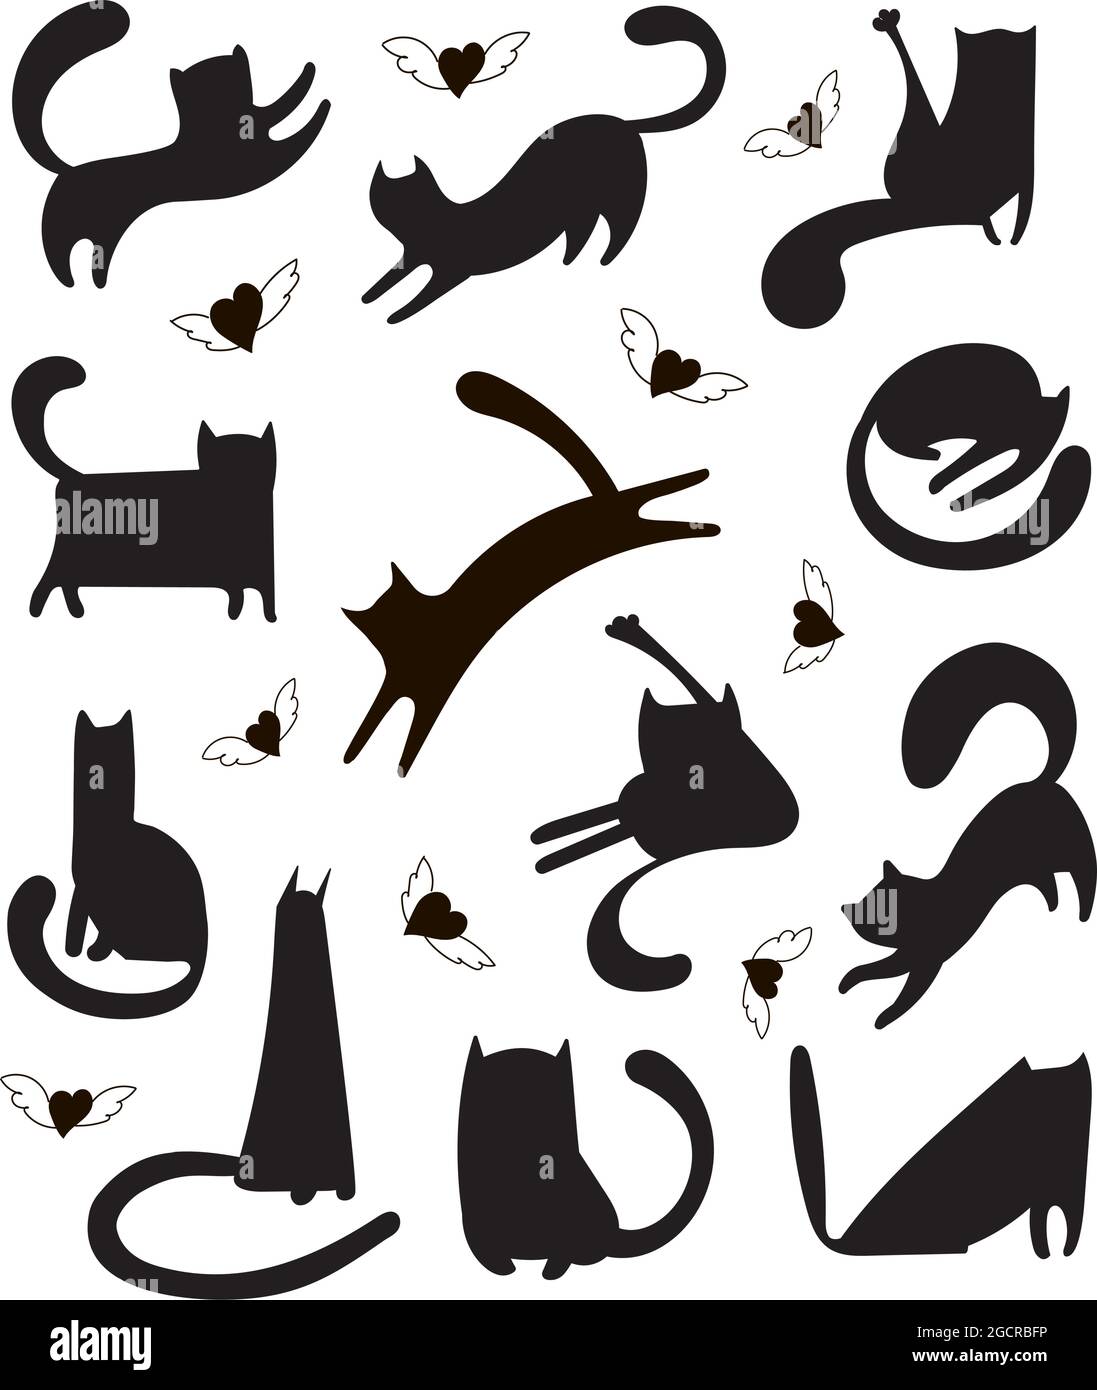 Jeu de vecteurs tendance de formes de chats dessinées à la main pour l'impression, le textile, les tee-shirts, cartes, autocollants, affiches. Illustration de chatons noirs et blancs qui dorment, jouent, courent et coeurs avec des ailes. Illustration de Vecteur